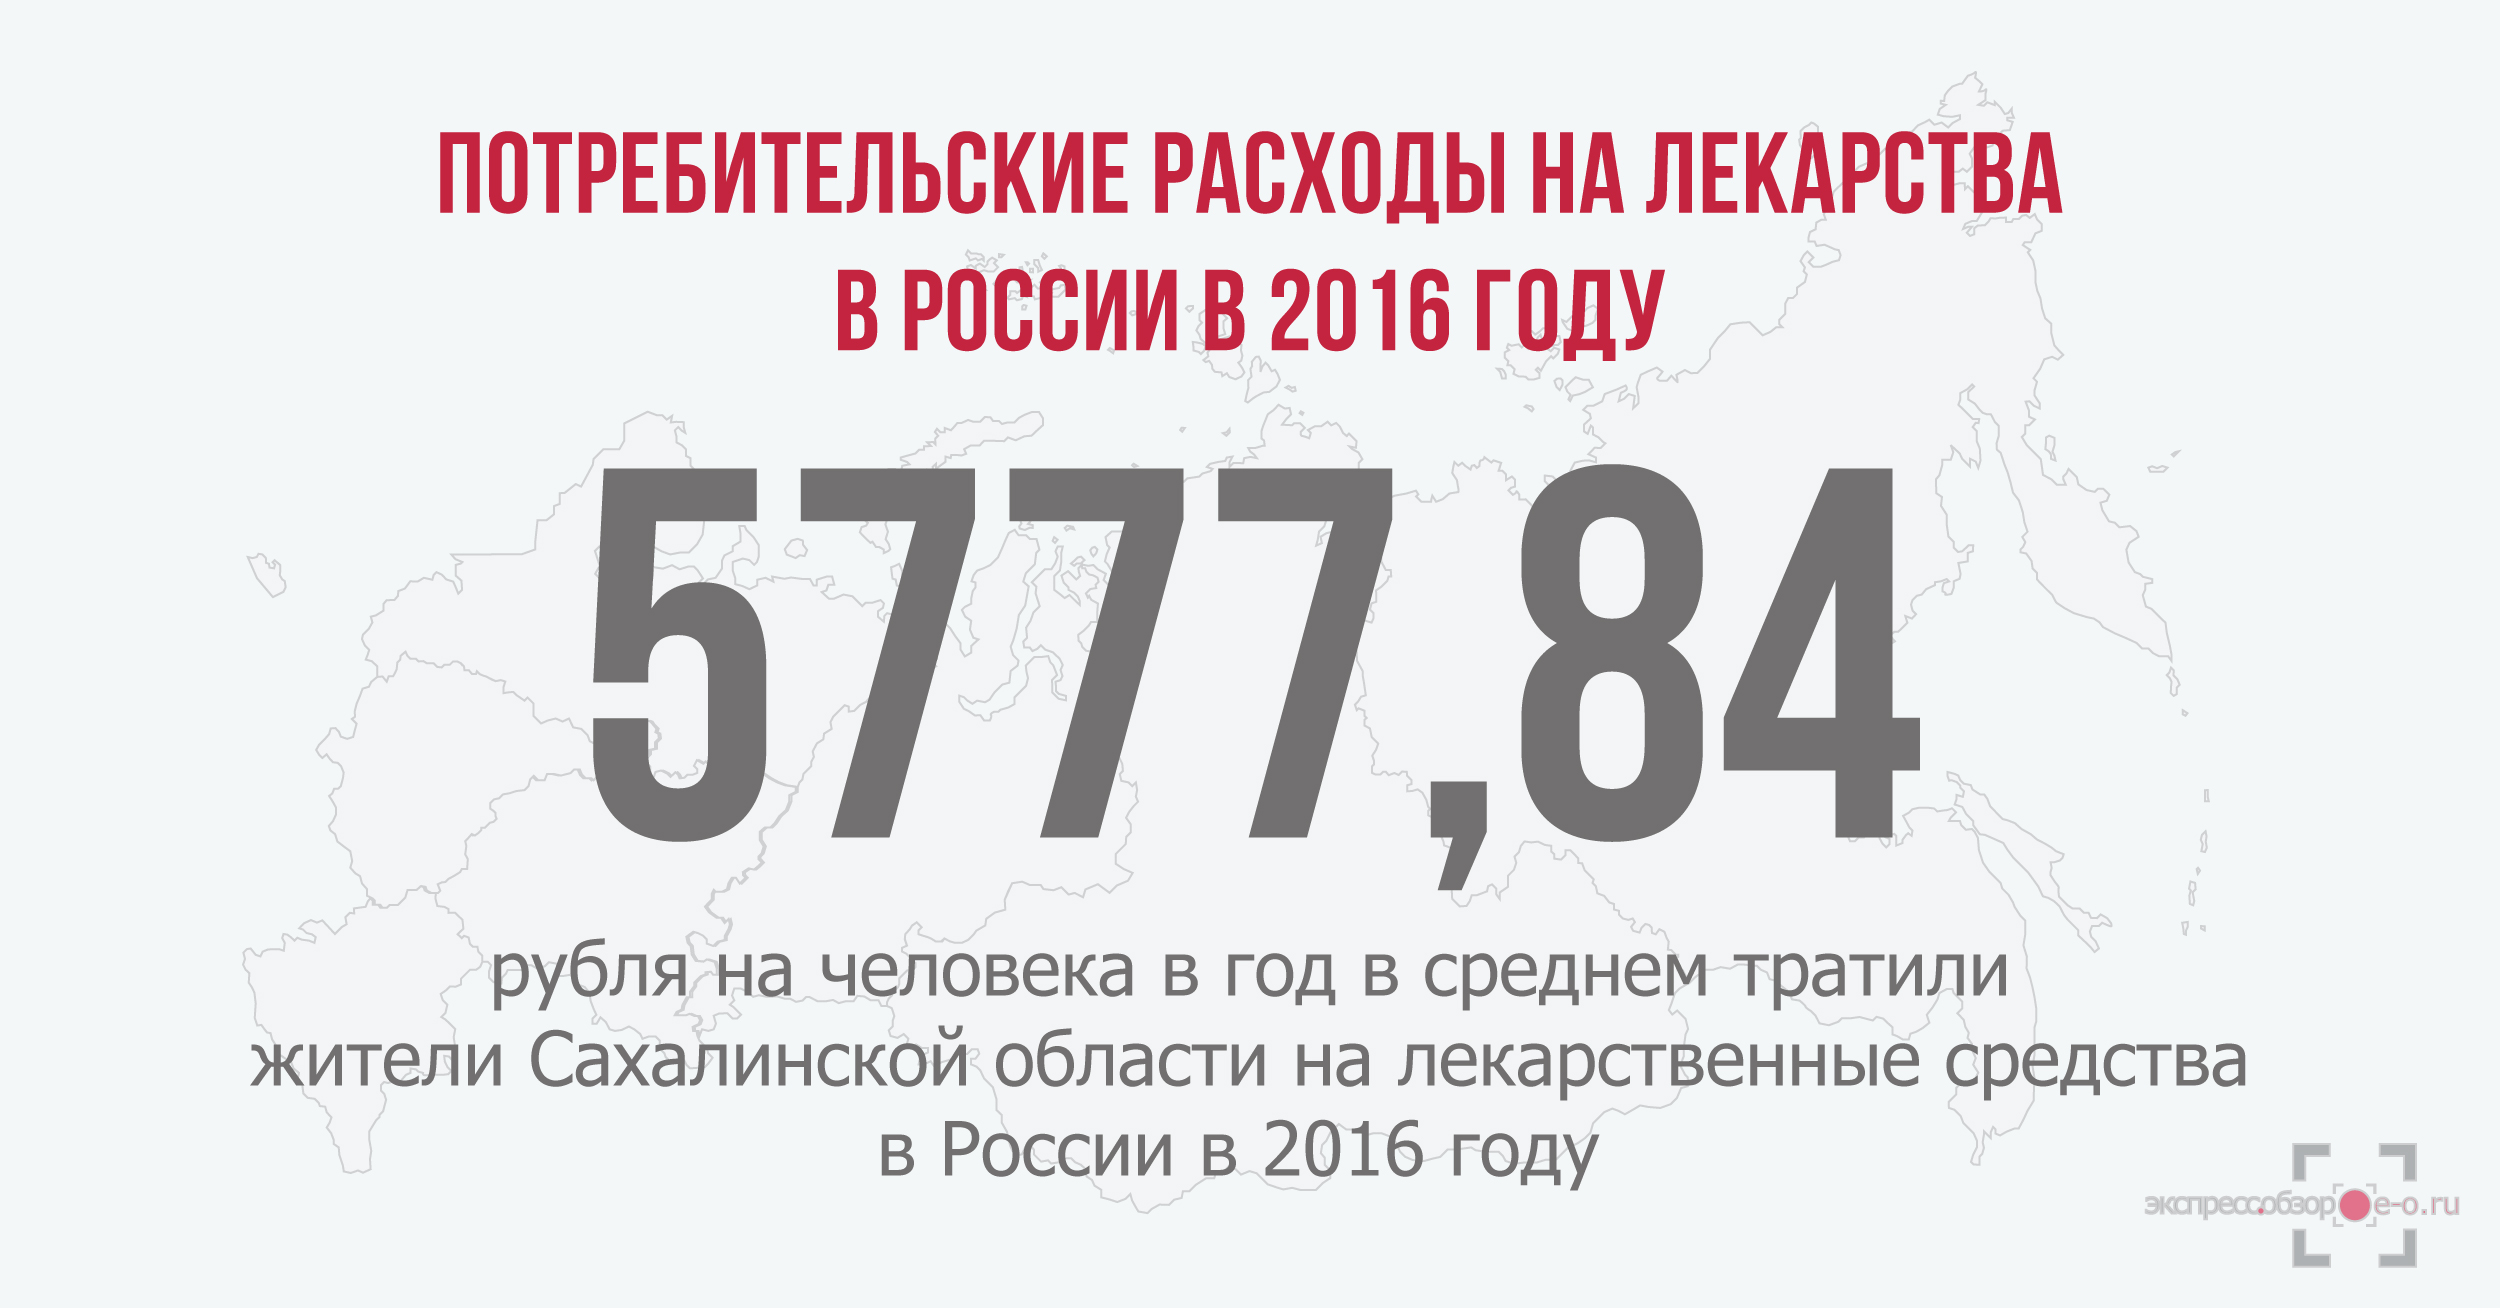 Потребительские расходы на лекарственные средства в России